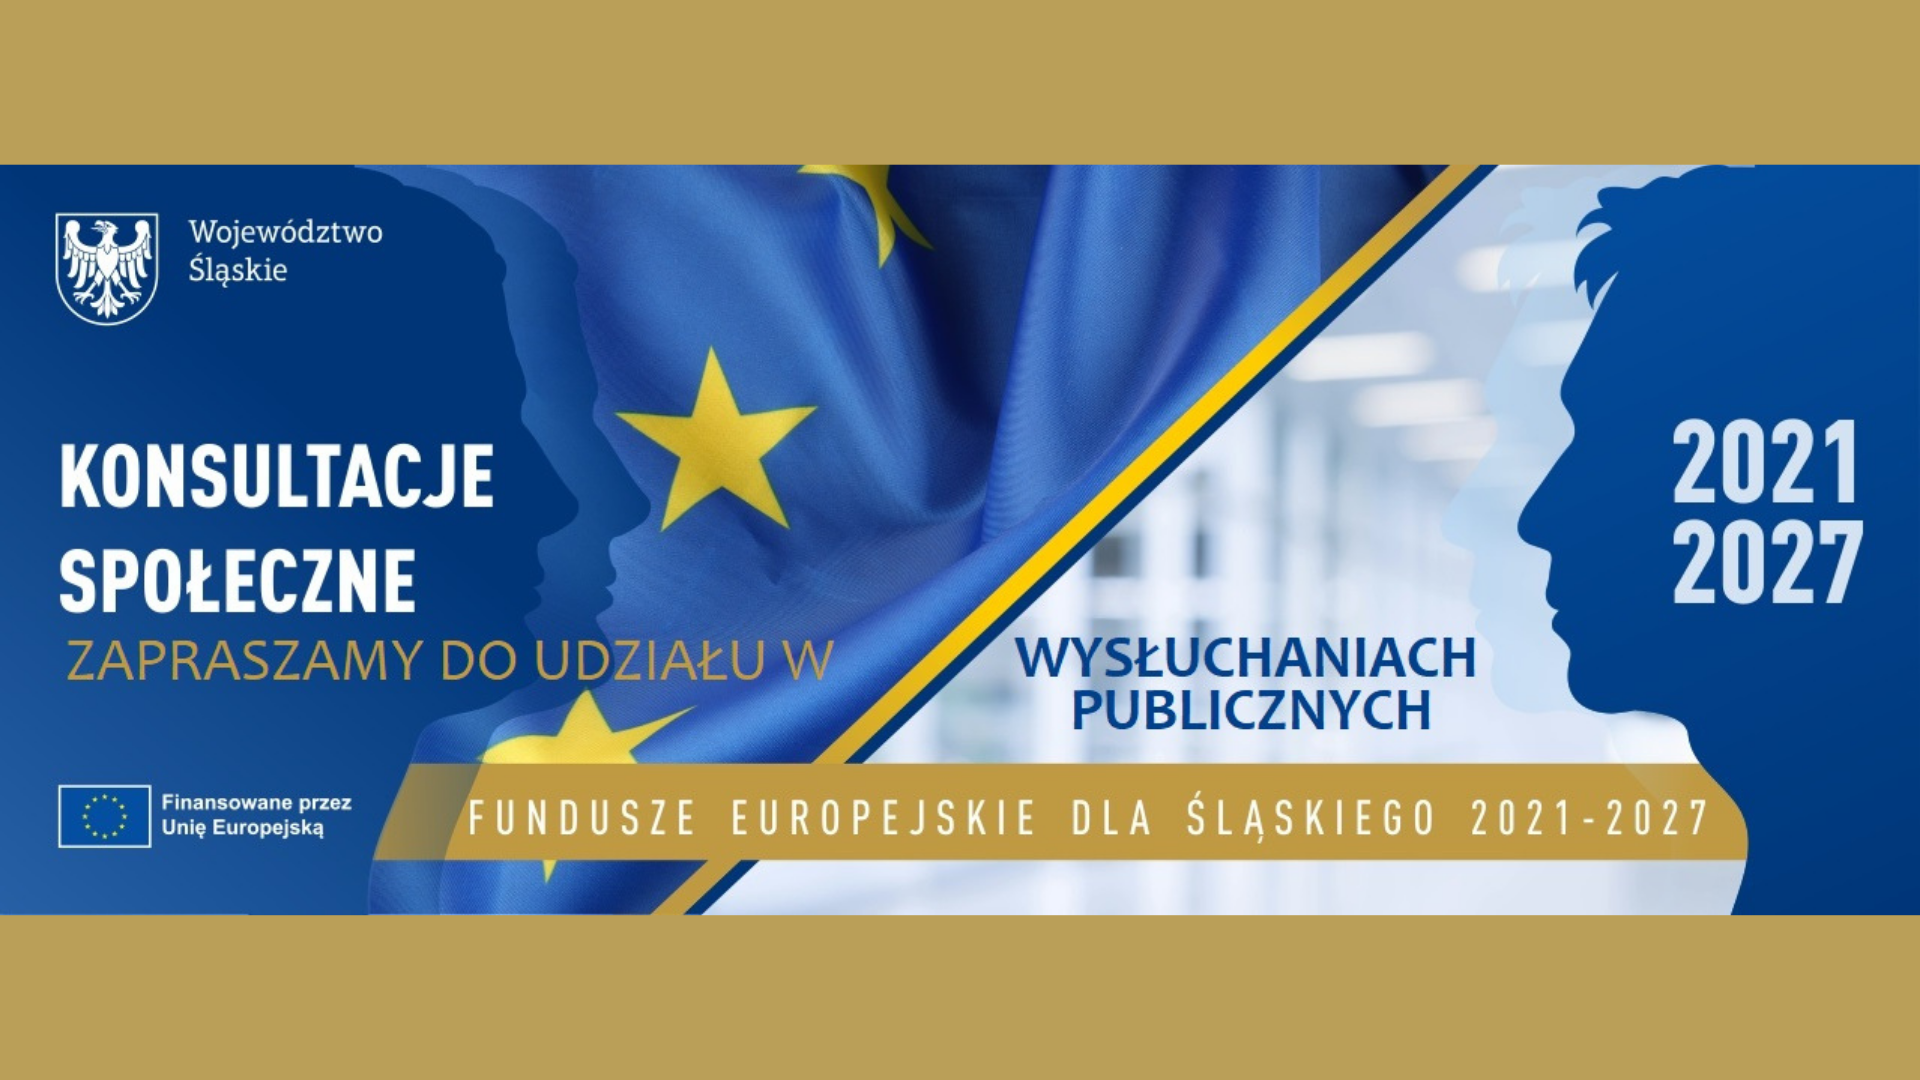 Daj się wysłuchać – zabierz głos ws. projektu programu Fundusze Europejskie dla Śląskiego 2021-2027